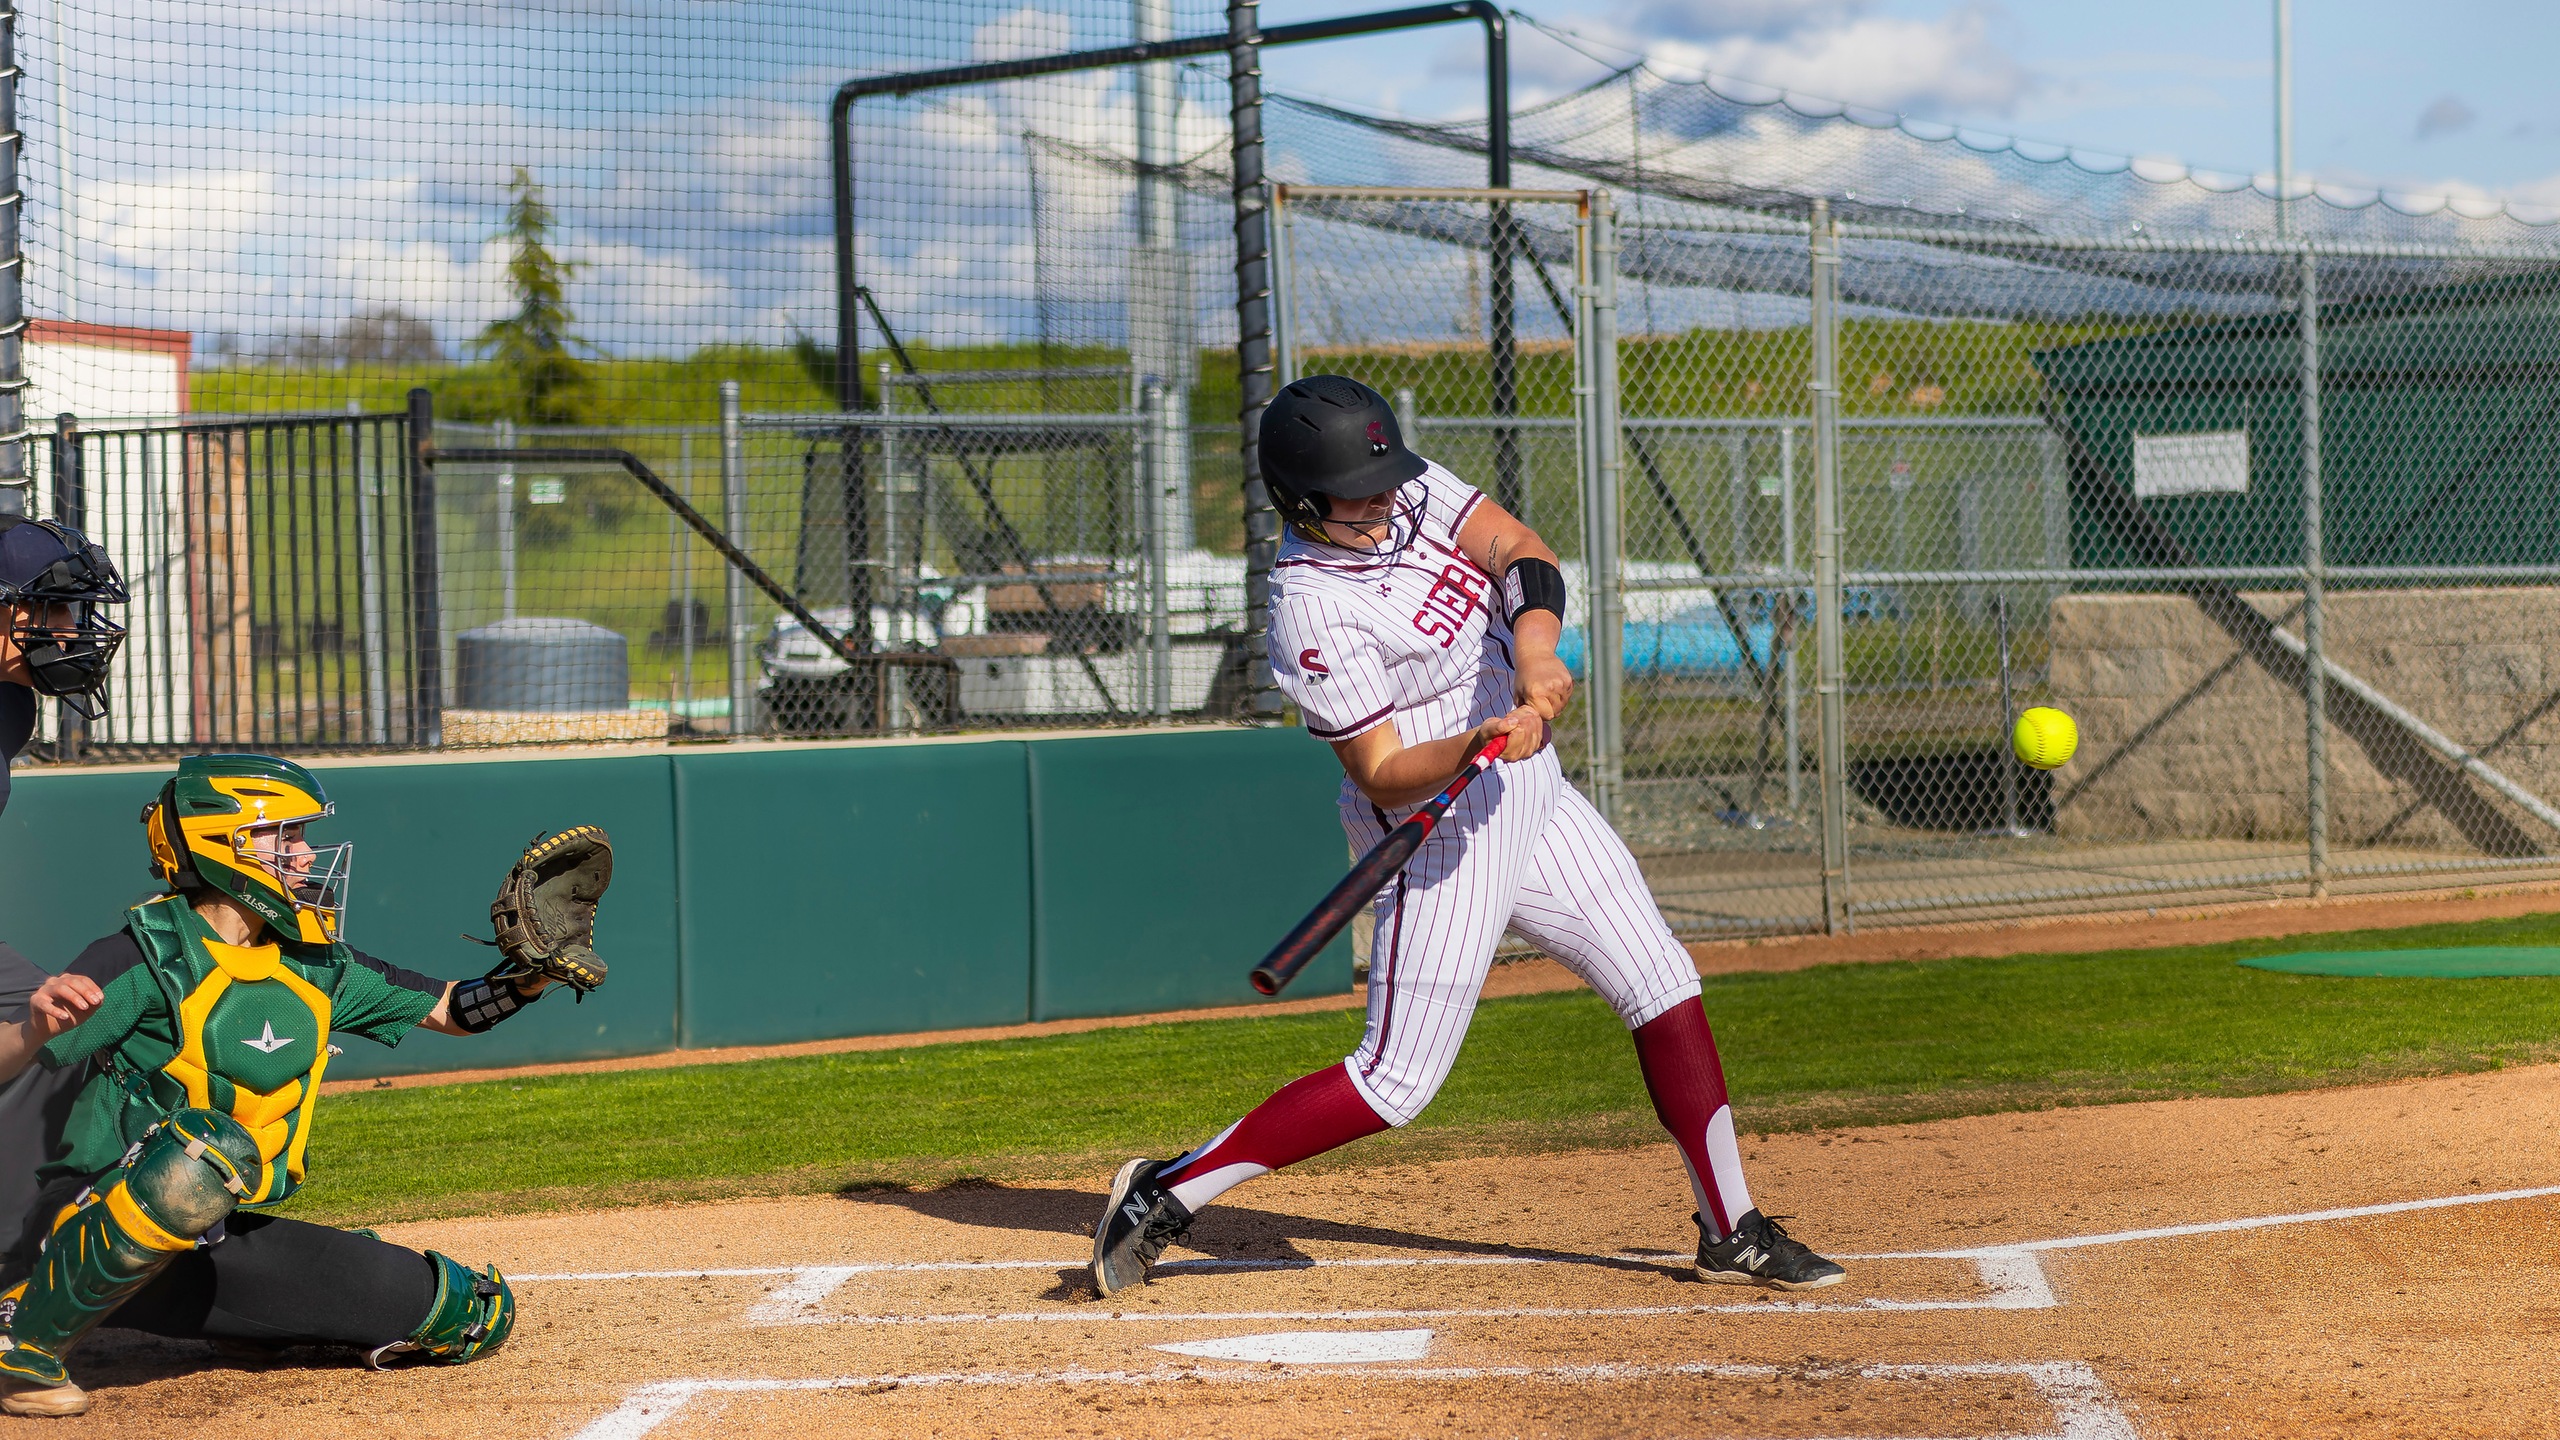 Sierra hitter swings at ball.